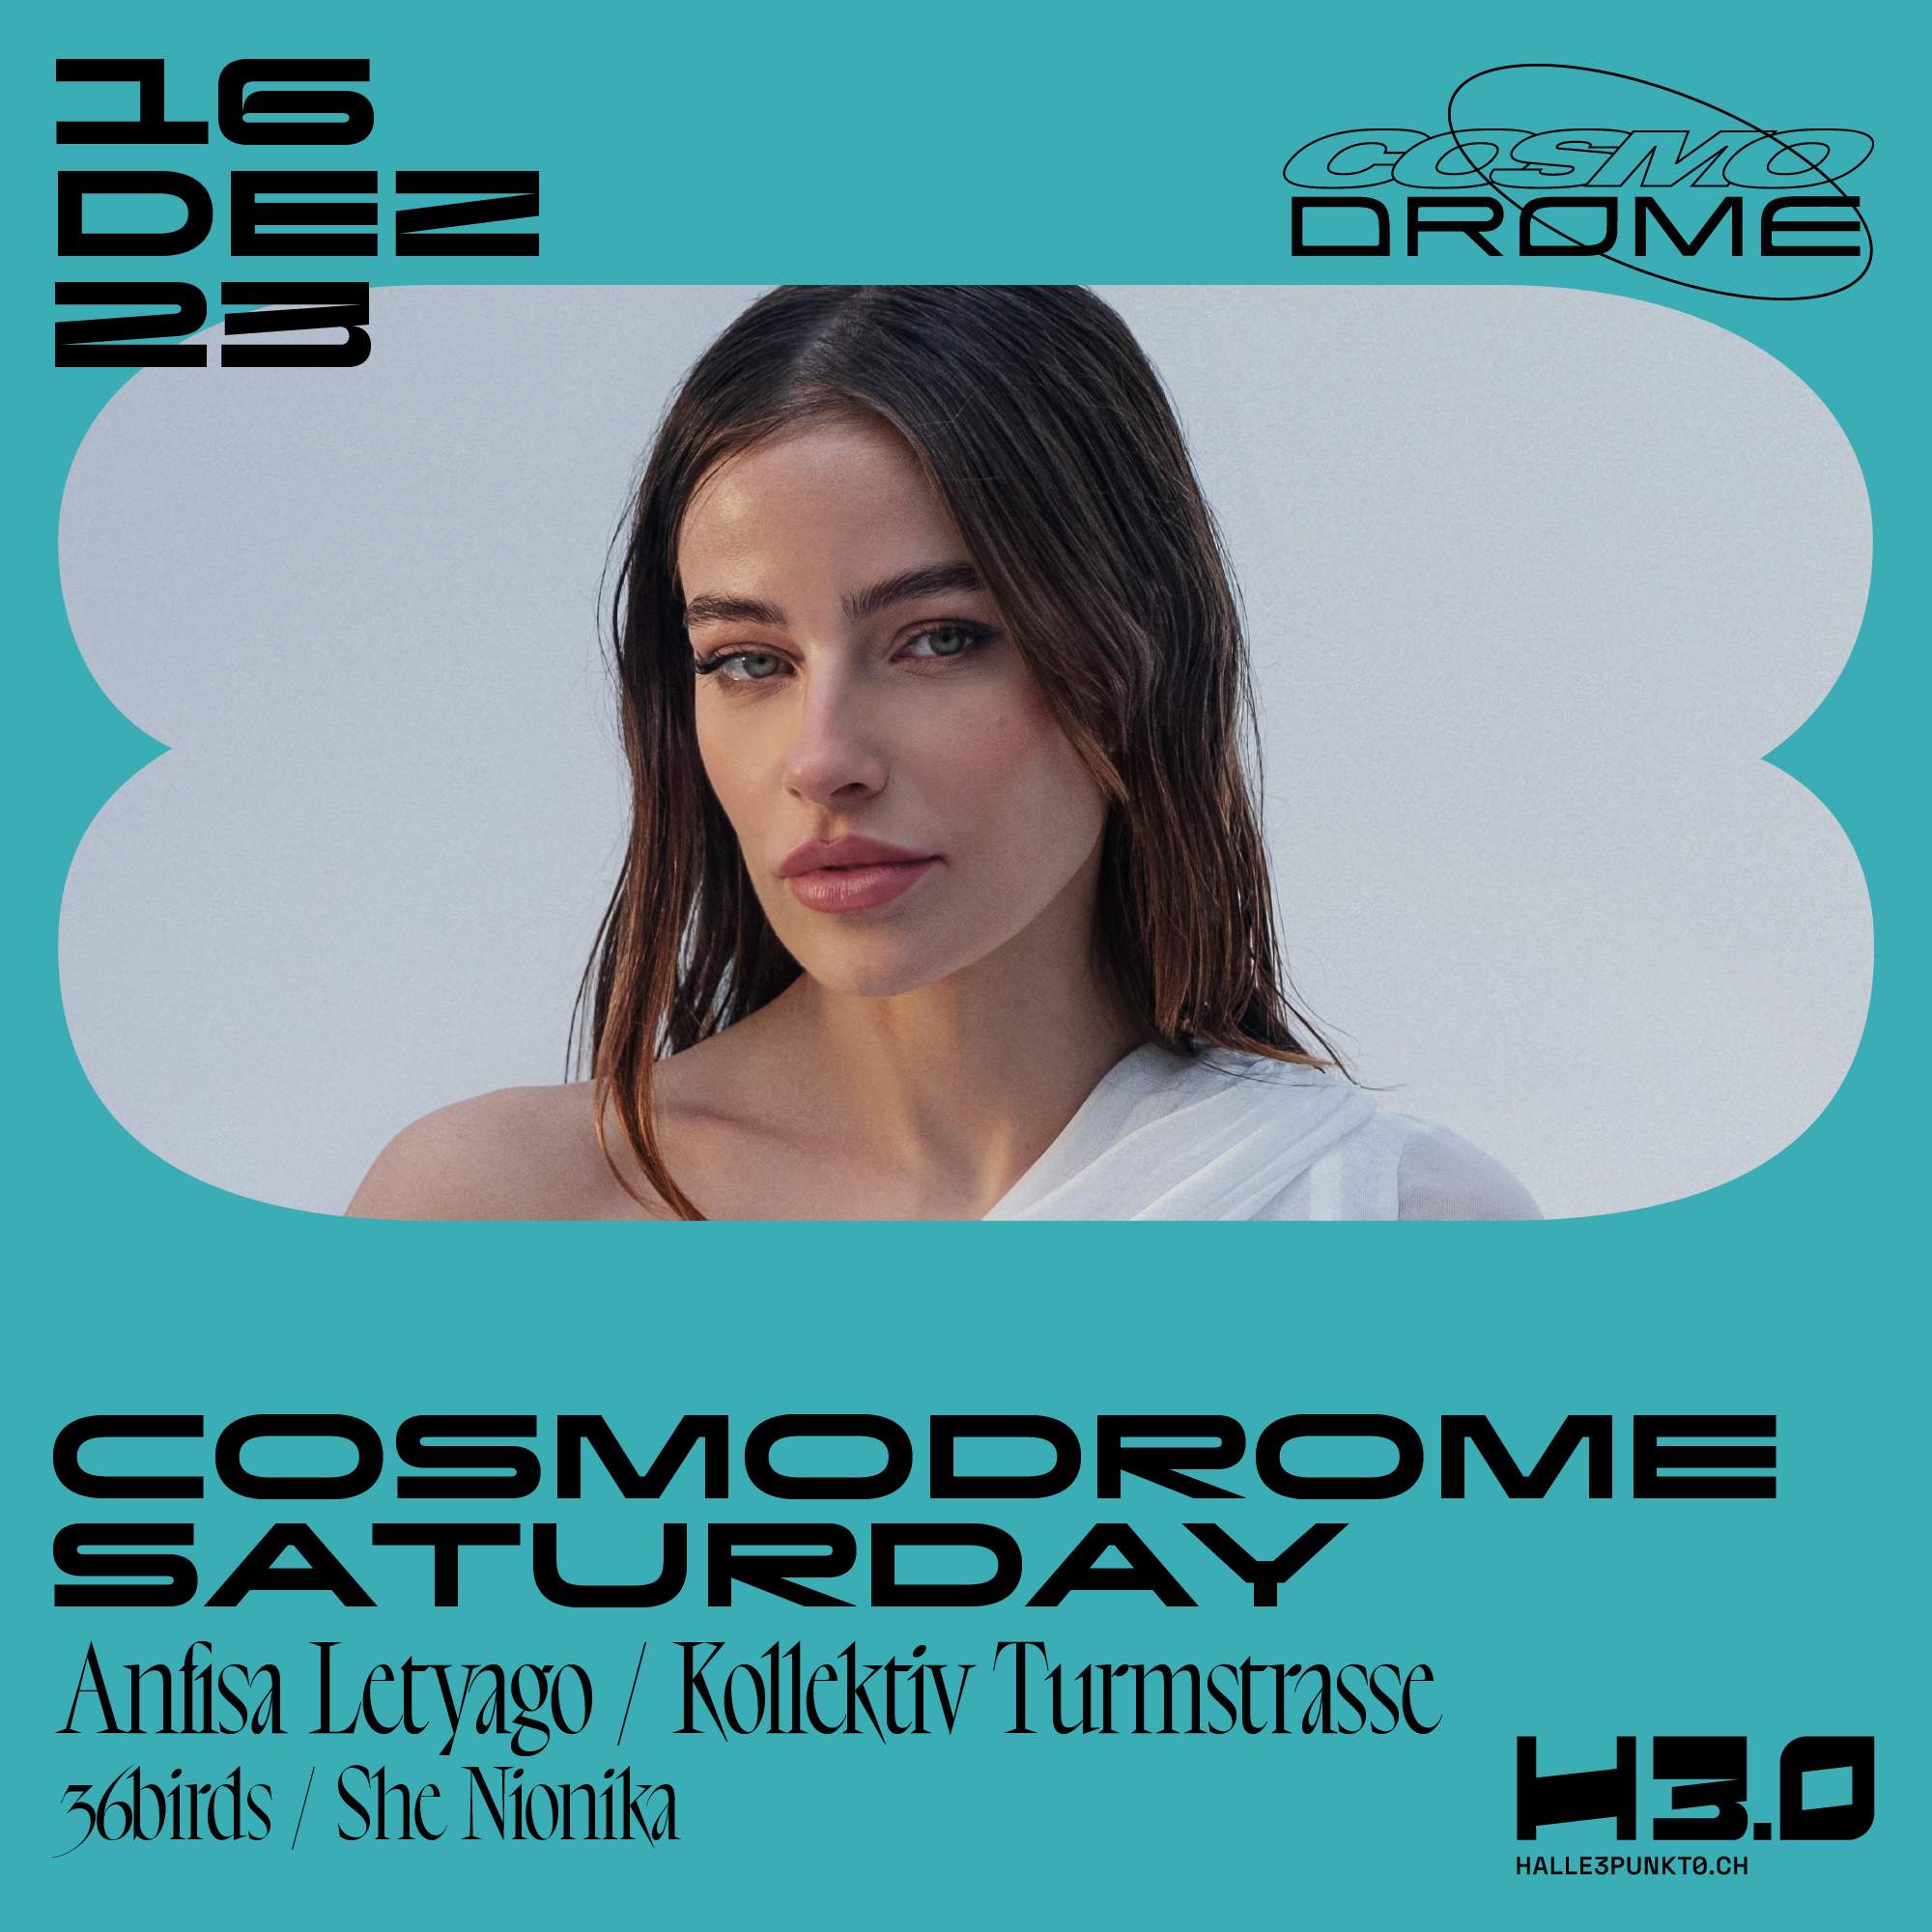 Cosmodrome Saturday - フライヤー表